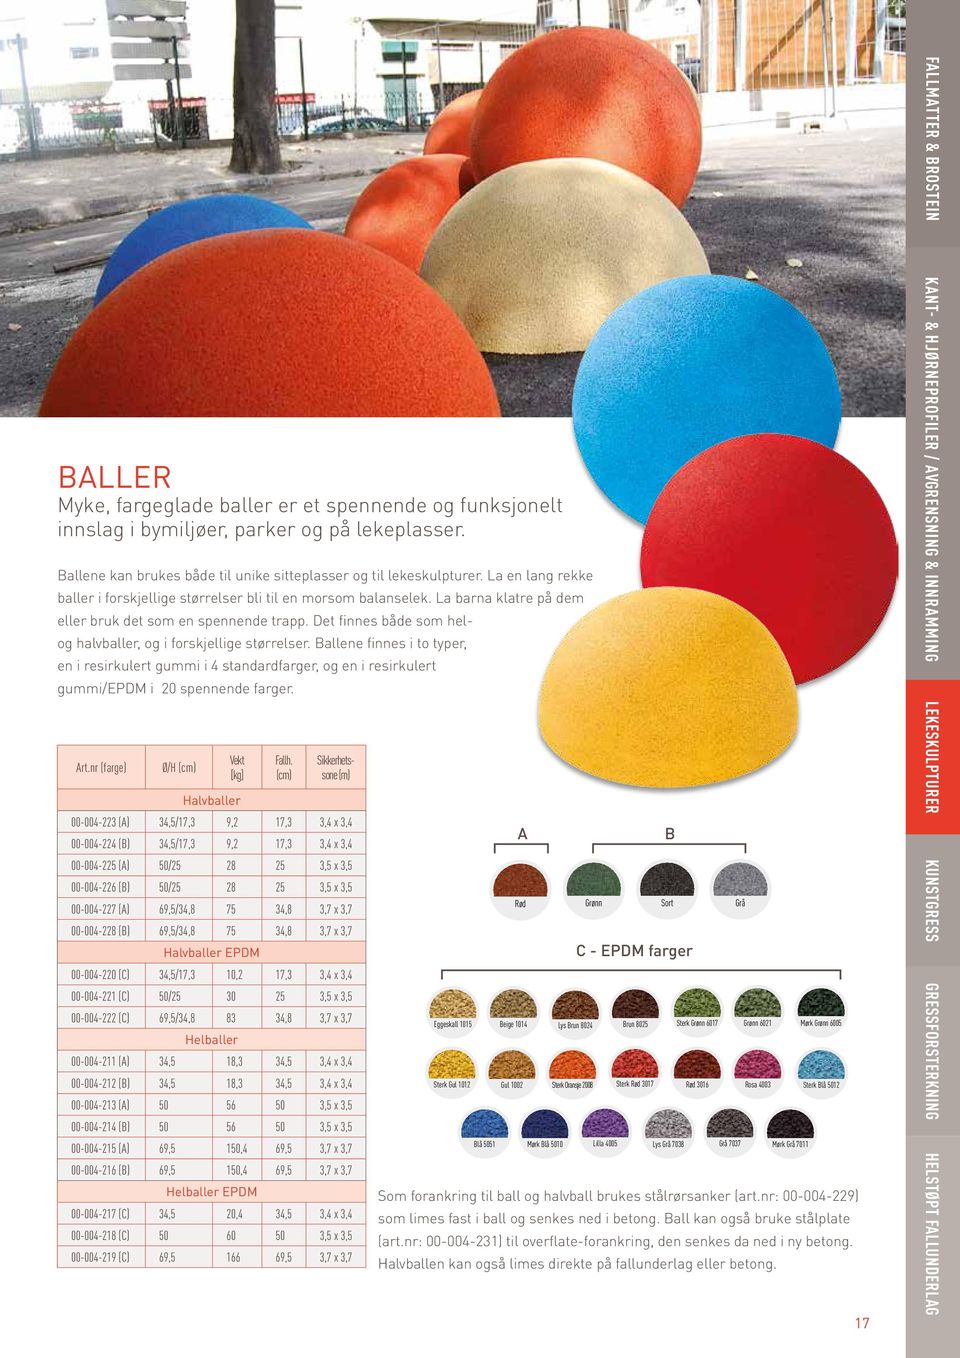 Det finnes både som helog halvballer, og i forskjellige størrelser. Ballene finnes i to typer, en i resirkulert gummi i 4 standardfarger, og en i resirkulert gummi/epdm i 20 spennende farger. Art.